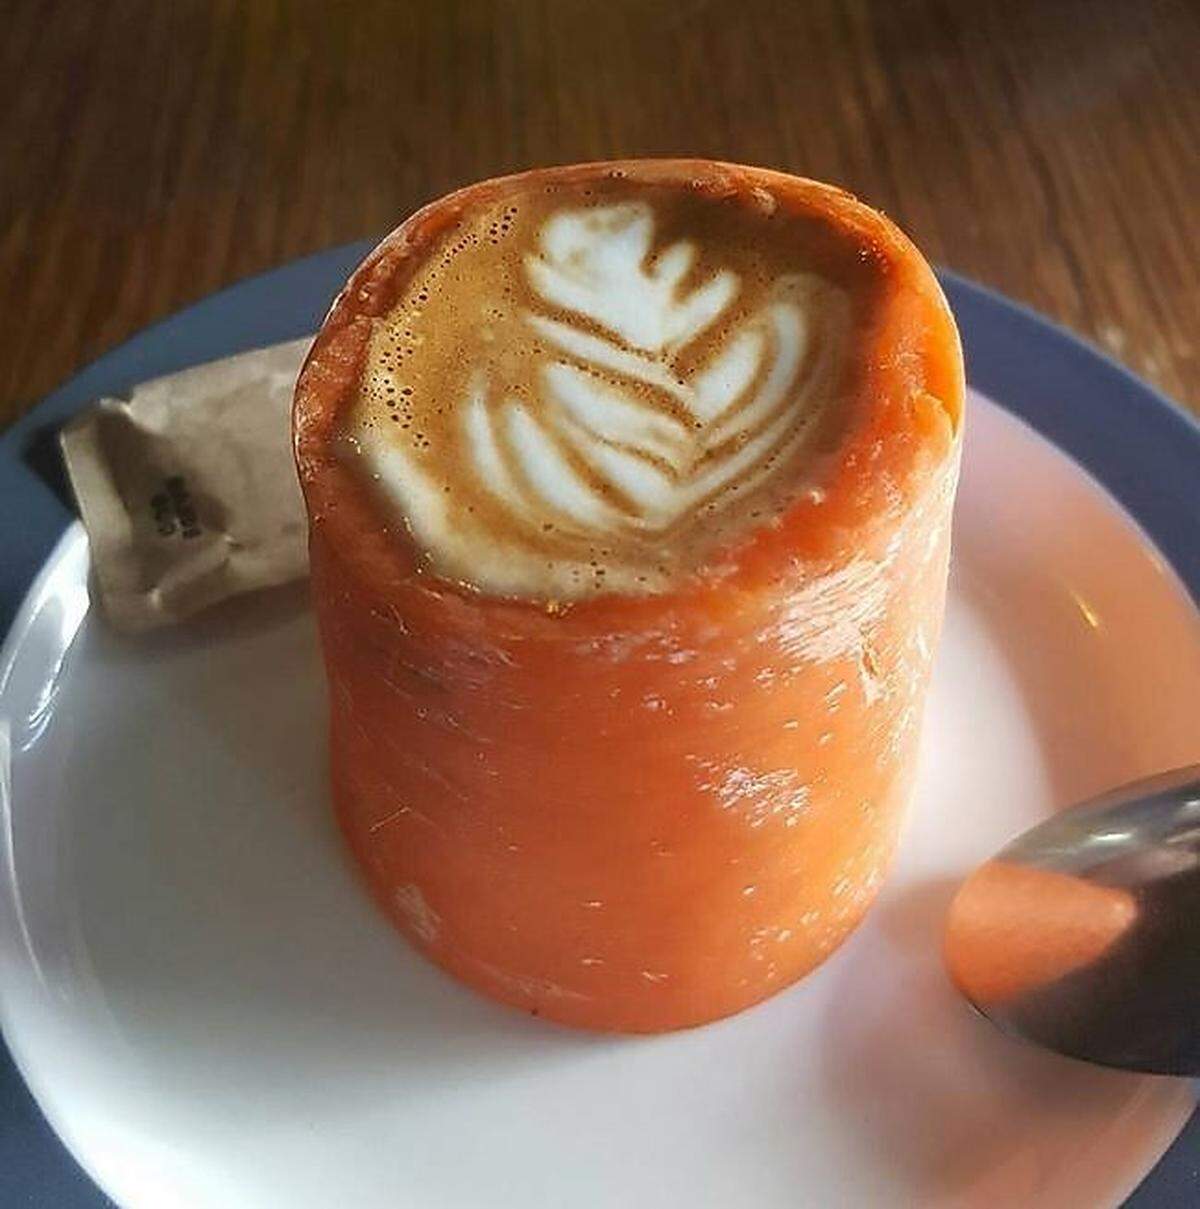 Ein ähnliches Konzept, ebenfalls gesehen in Sydney: Caffè Latte, der in einer ausgehöhlten Karotte serviert wird.